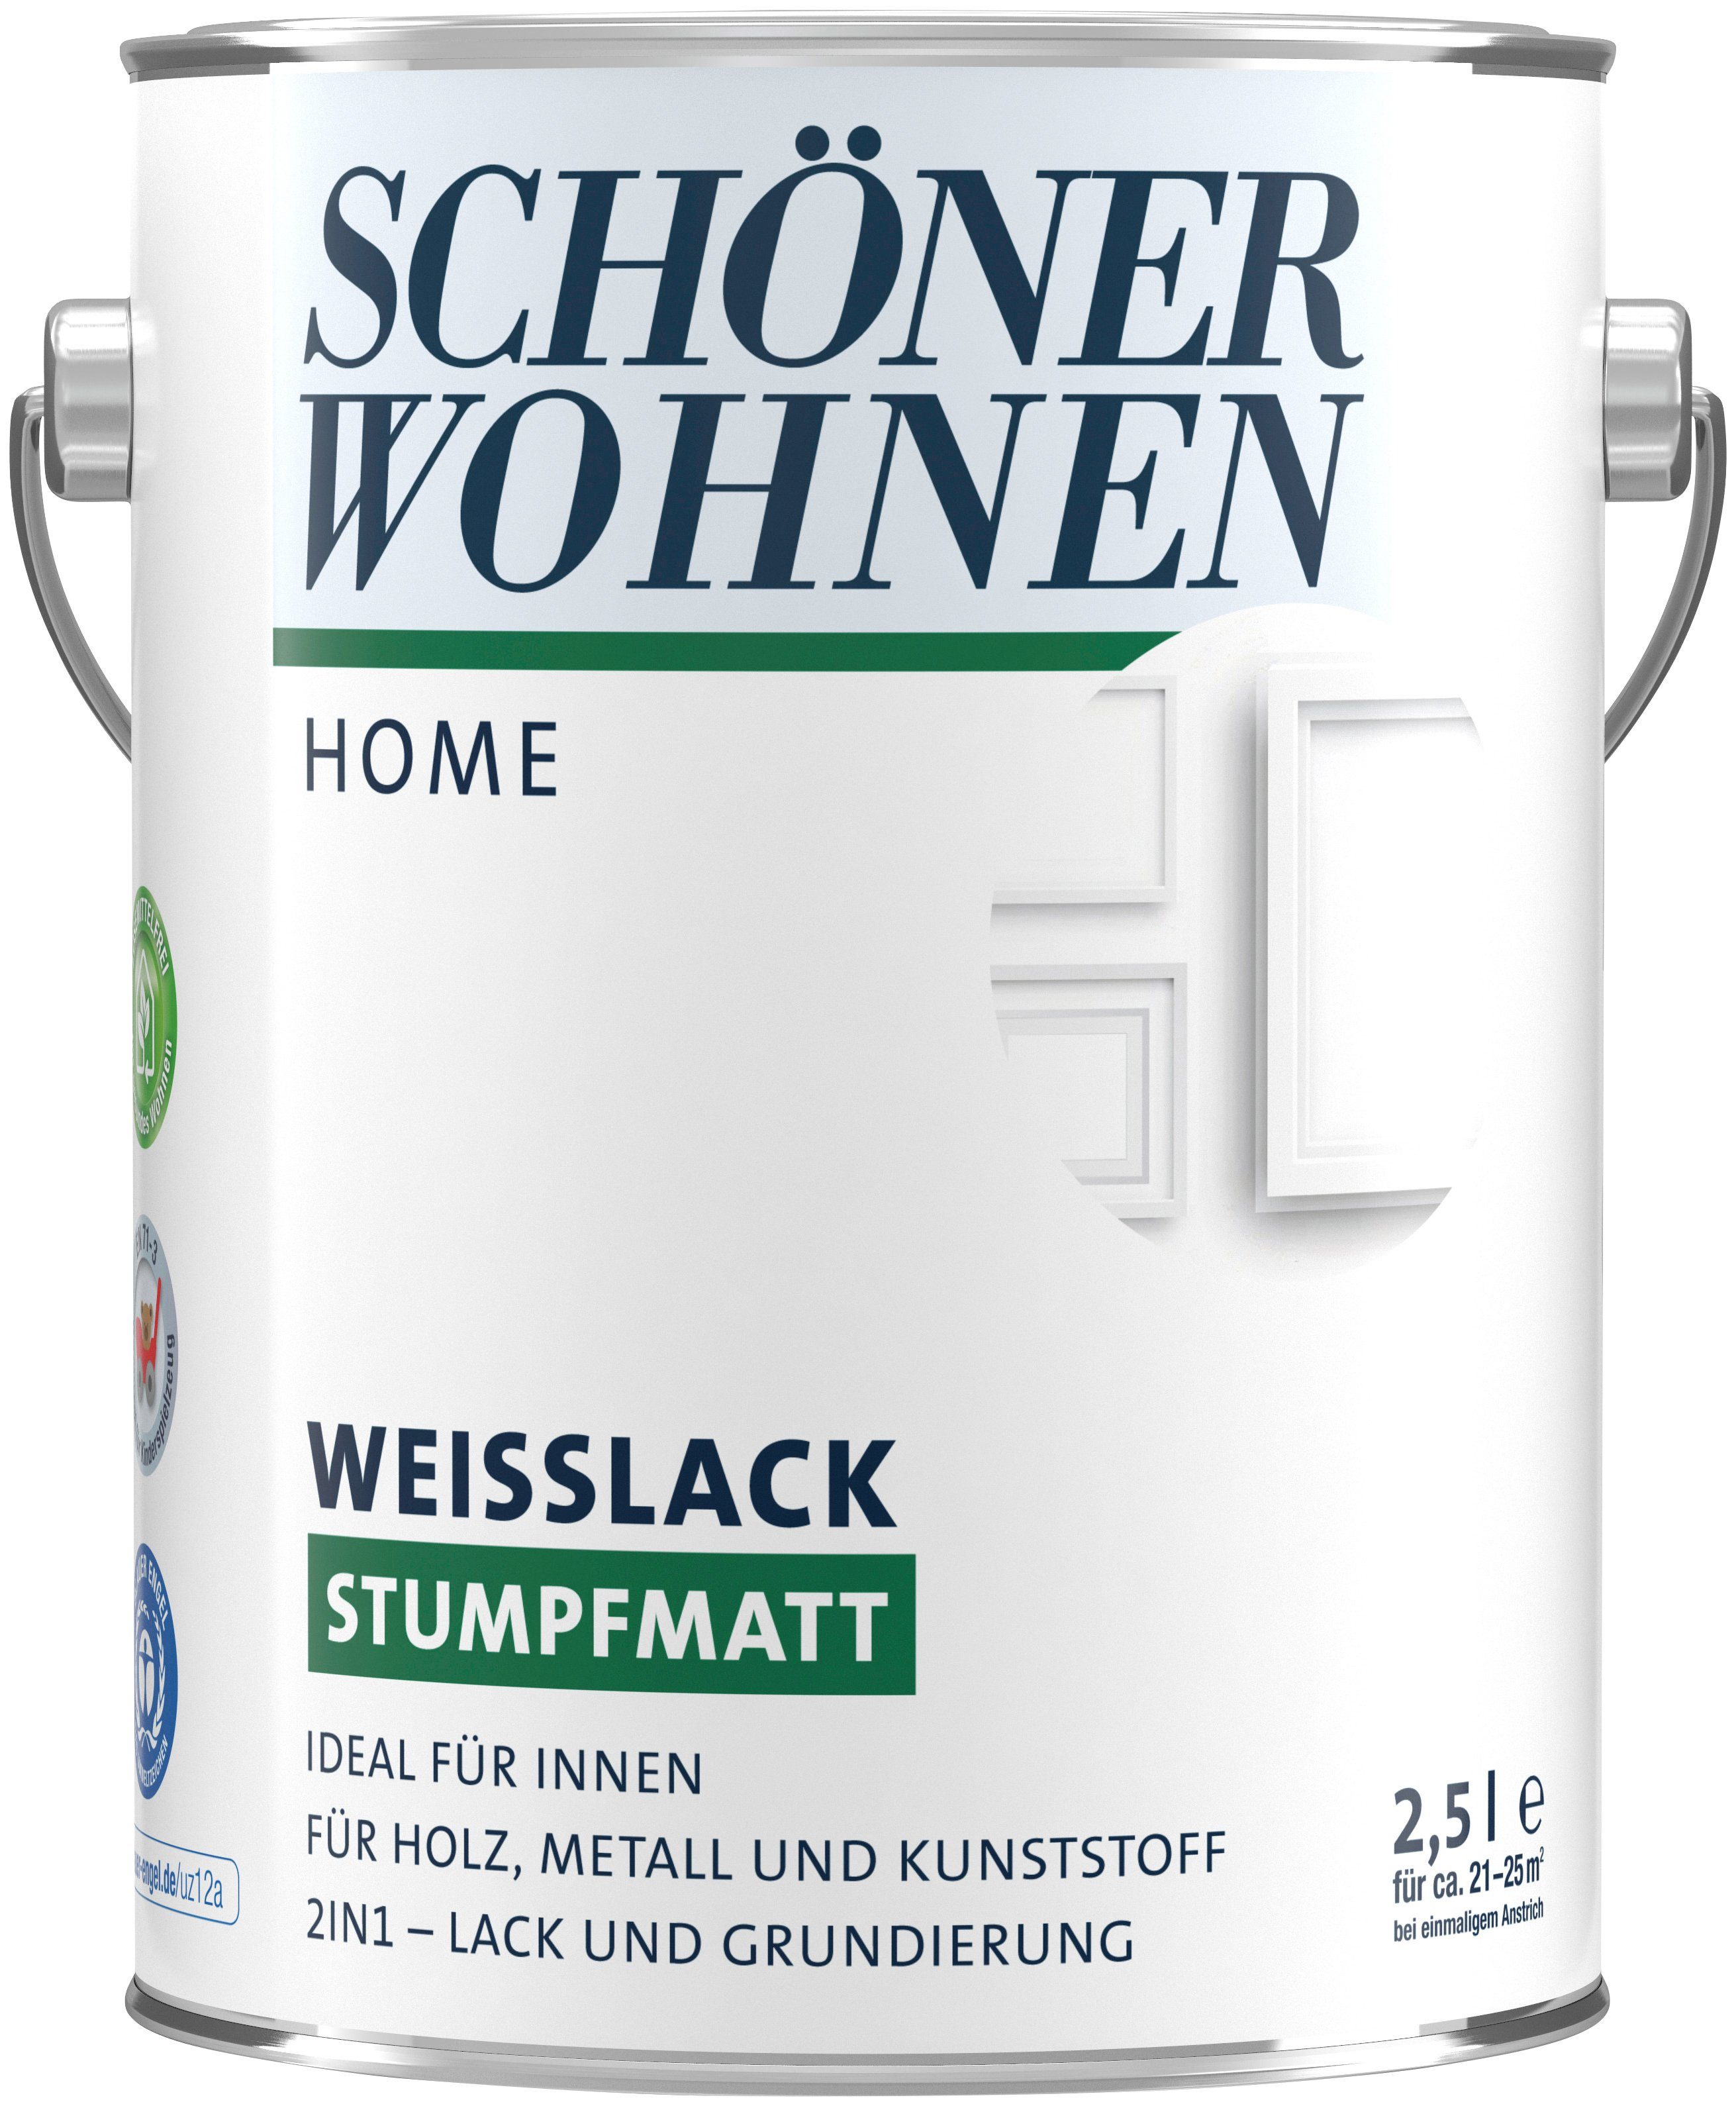 SCHÖNER WOHNEN FARBE Weißlack Home Weisslack, 2,5 Liter, weiß, stumpfmatt, vergilbungsbeständiger Acryllack